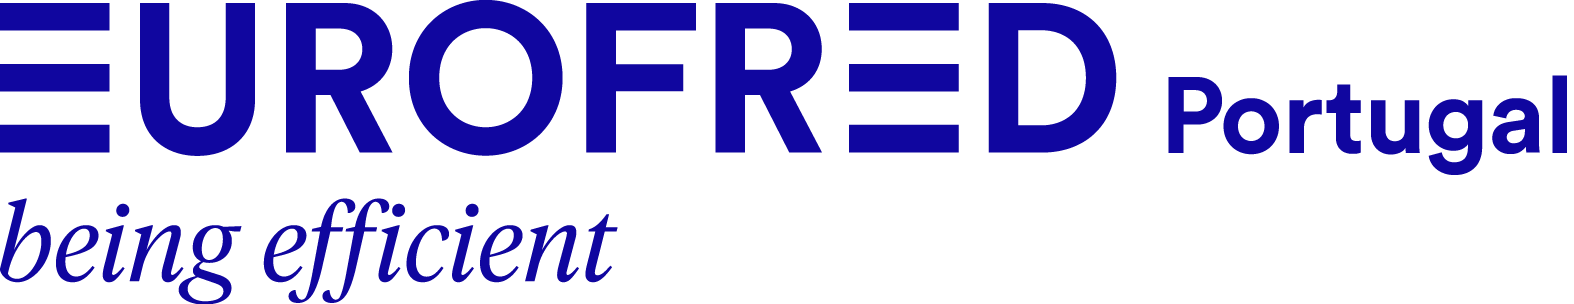 Eurofred Portugal logo